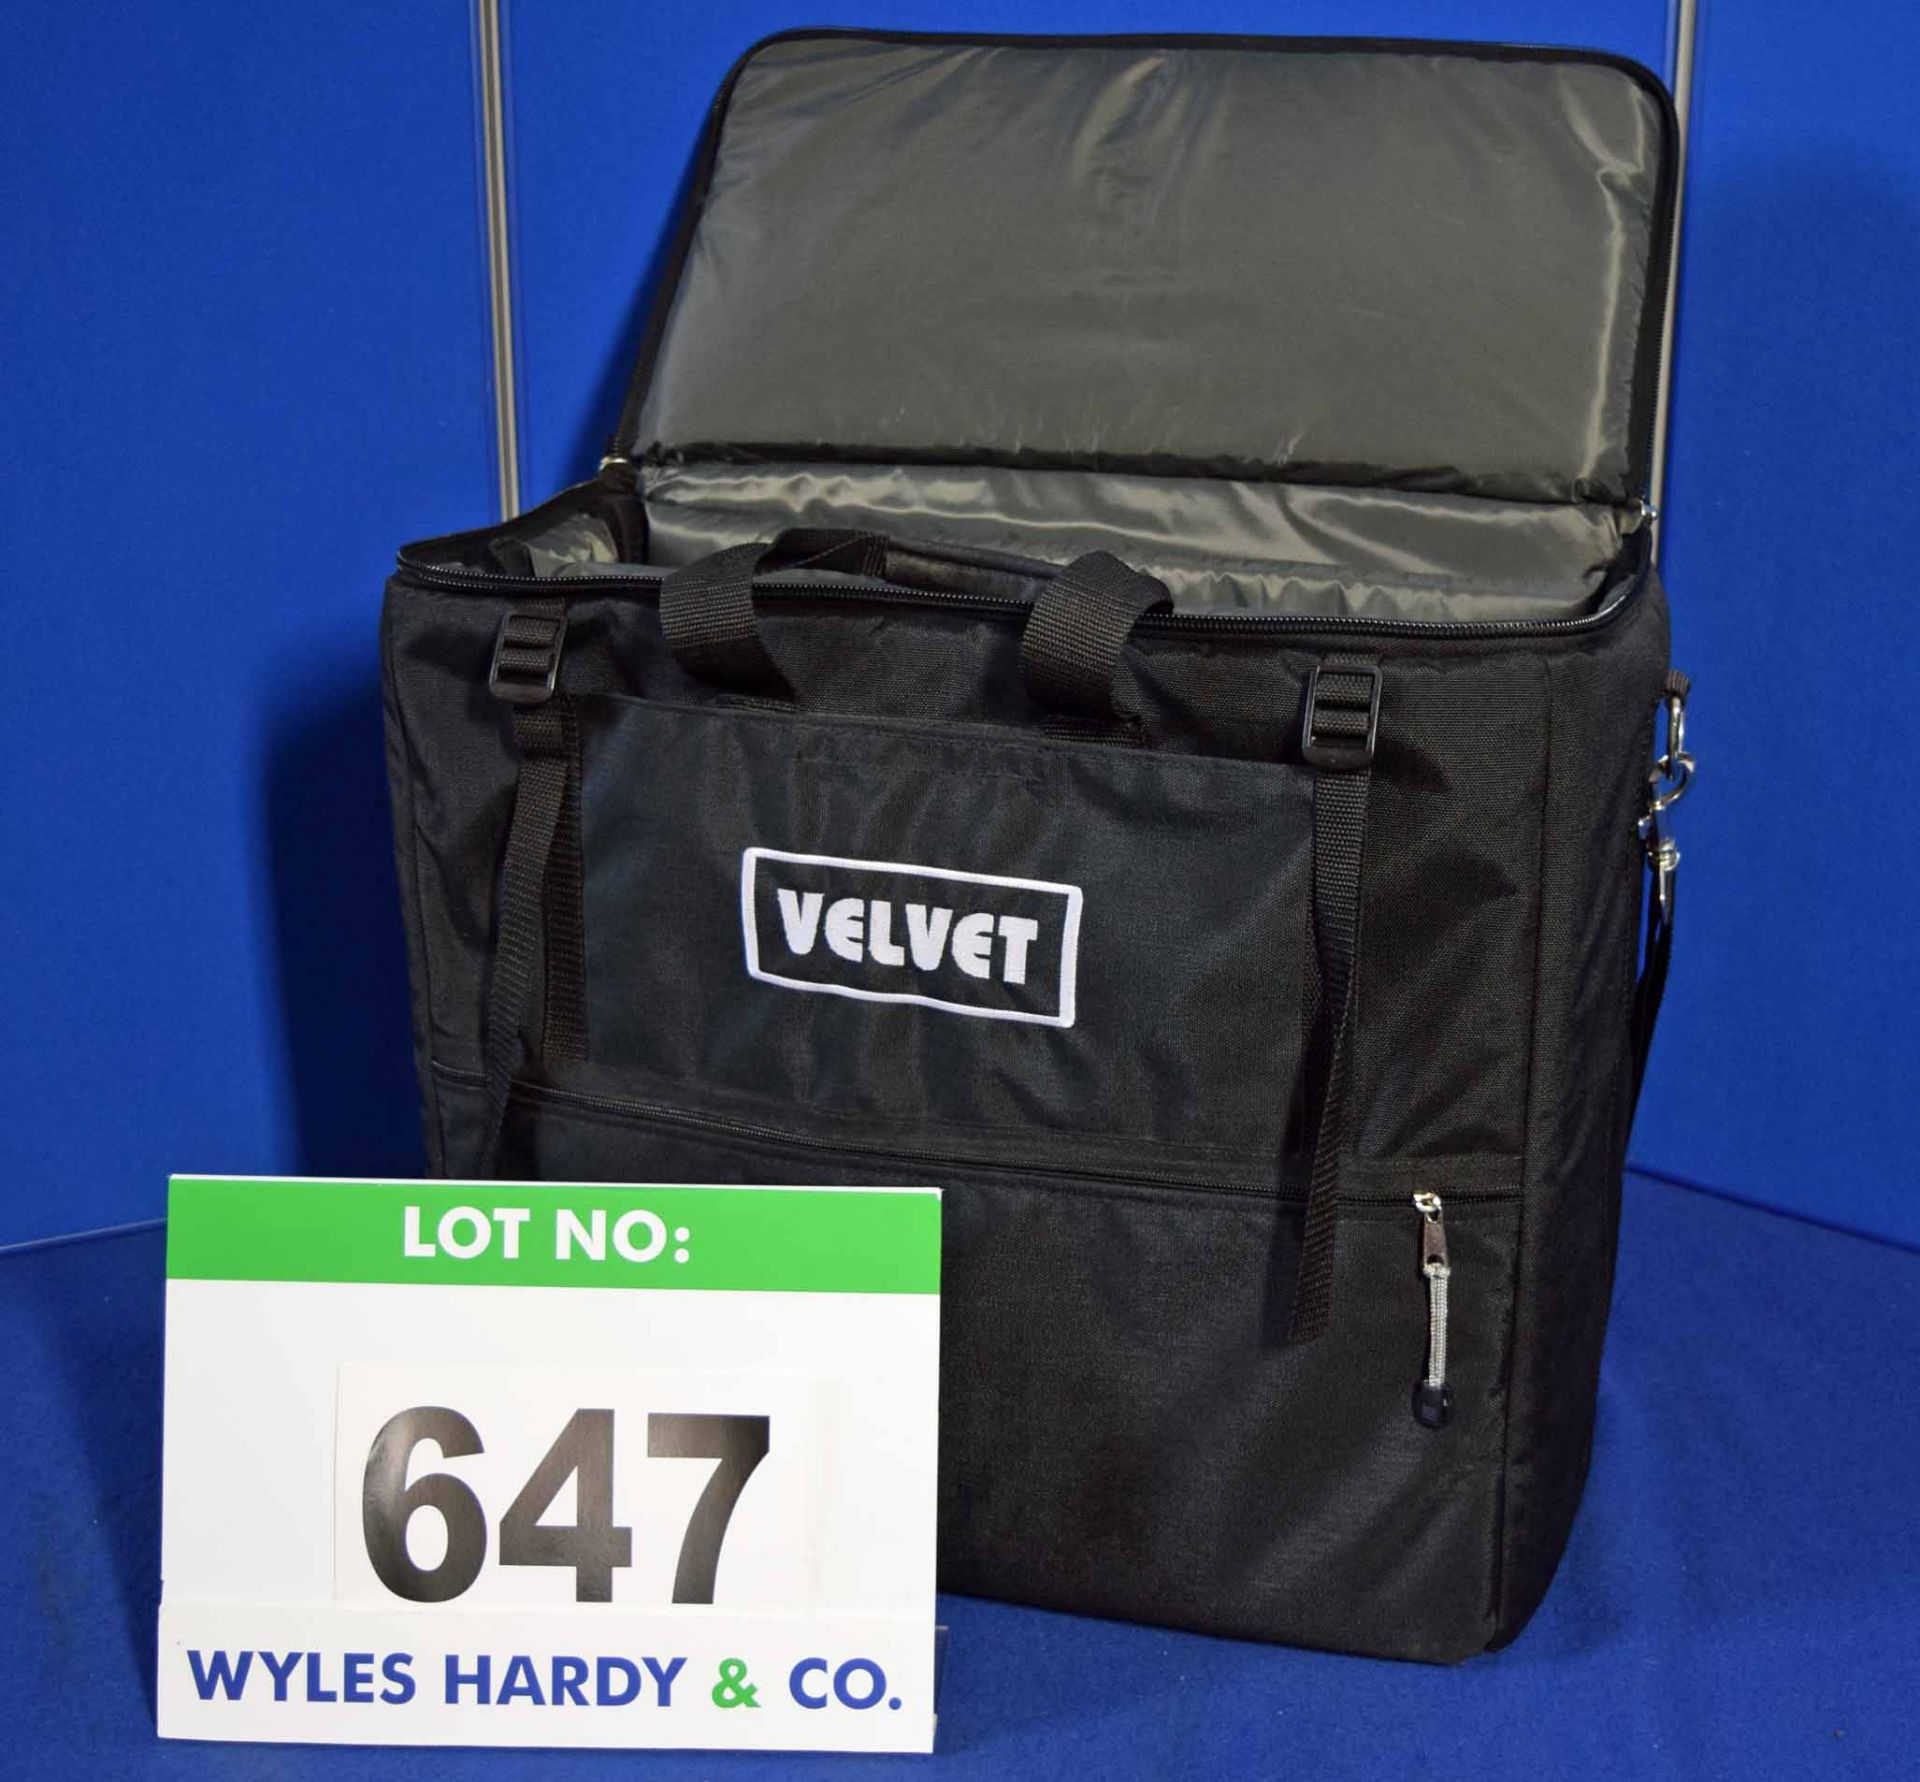 A VL1-Bag Cordura Carrying Bag for A VELVET 1 Kit